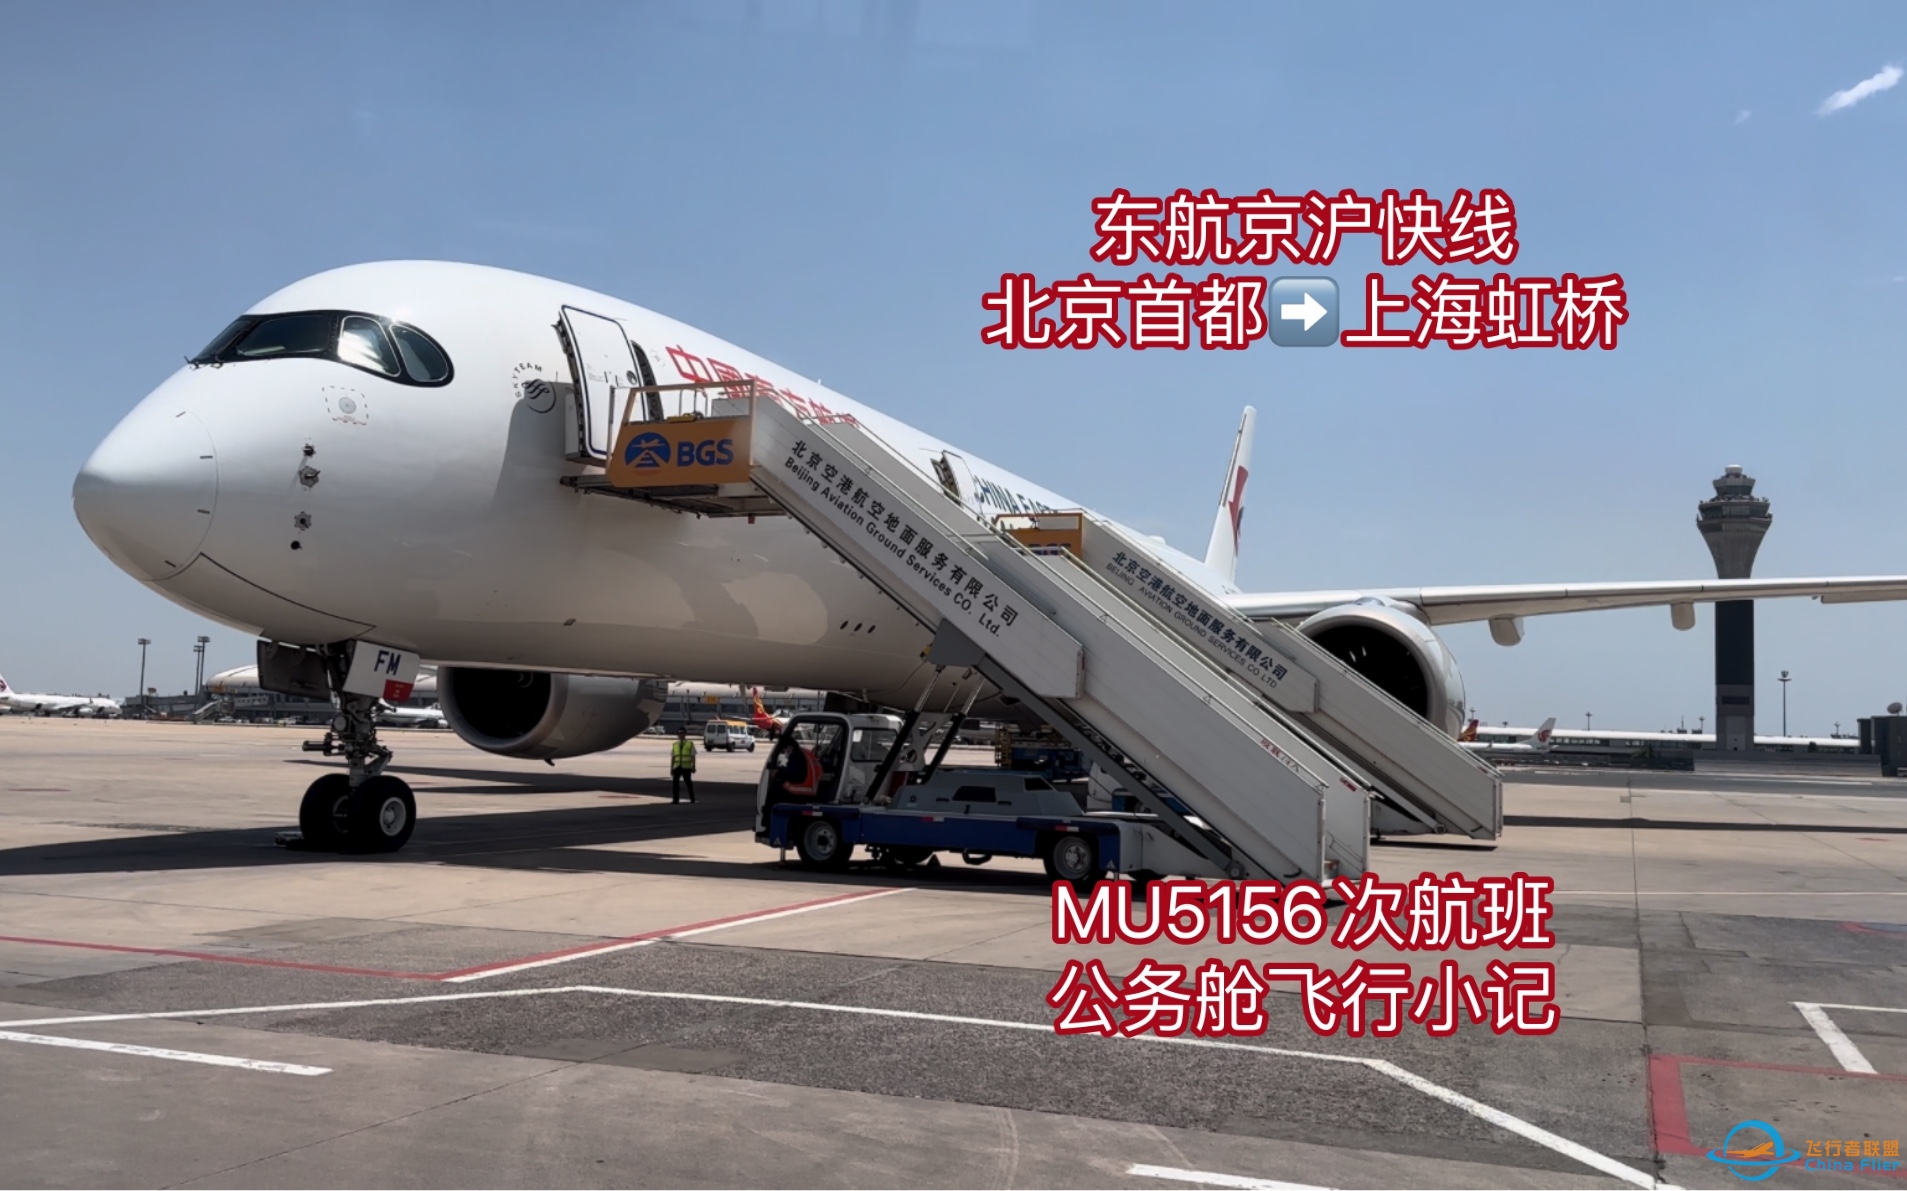 【飞行体验】晚点了，但不影响体验—东航京沪快线公务舱 （MU5156次）PEK- SHA 飞行小记-4397 